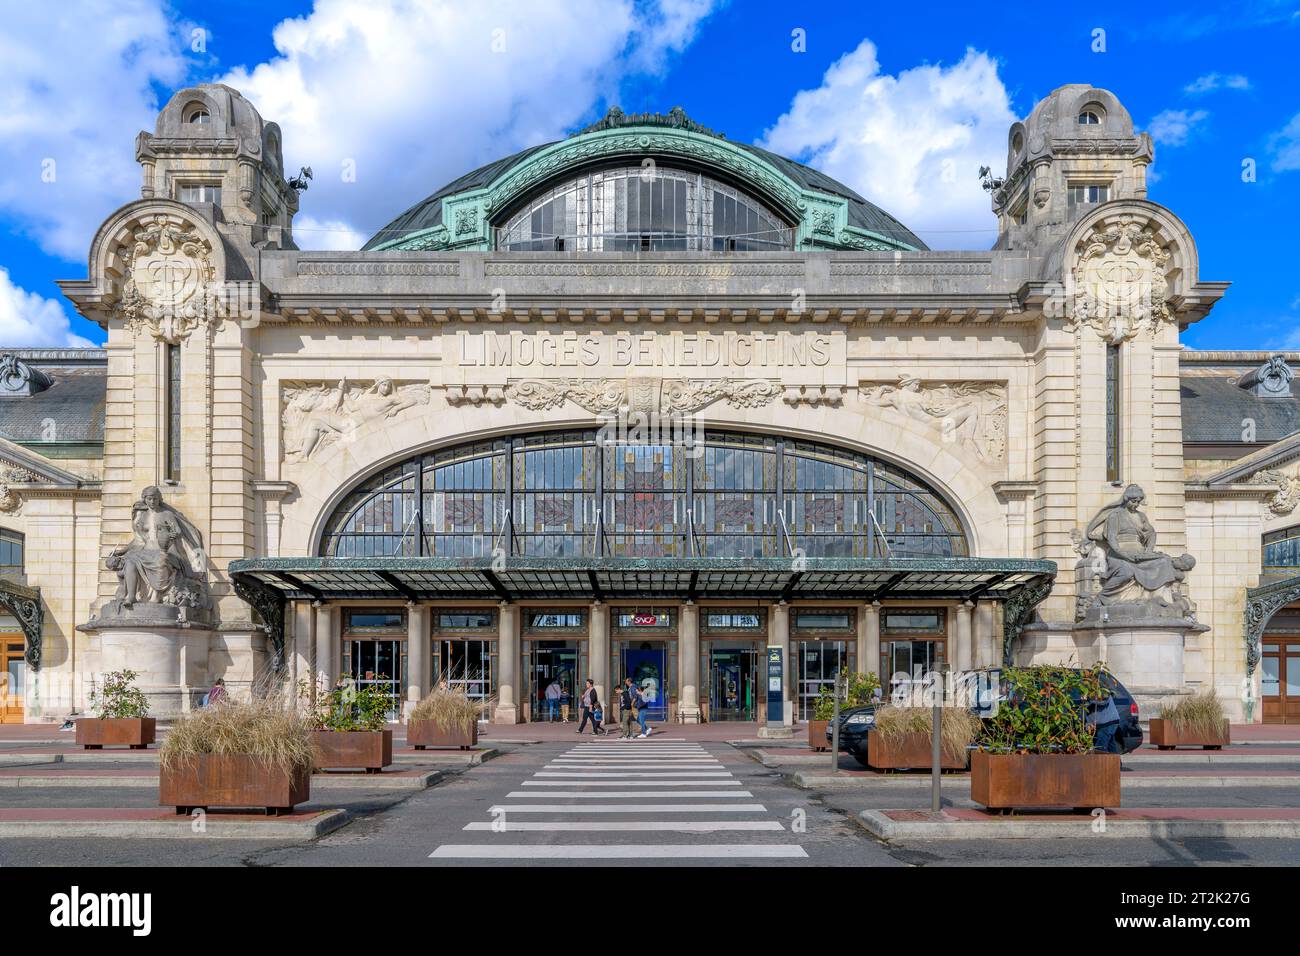 Stazione Limoges Bénédictins sulla linea tra Orléans e Montauban. Dall'architetto Roger Gonthier che combina art nouveau, art deco e neoclassicismo. Foto Stock